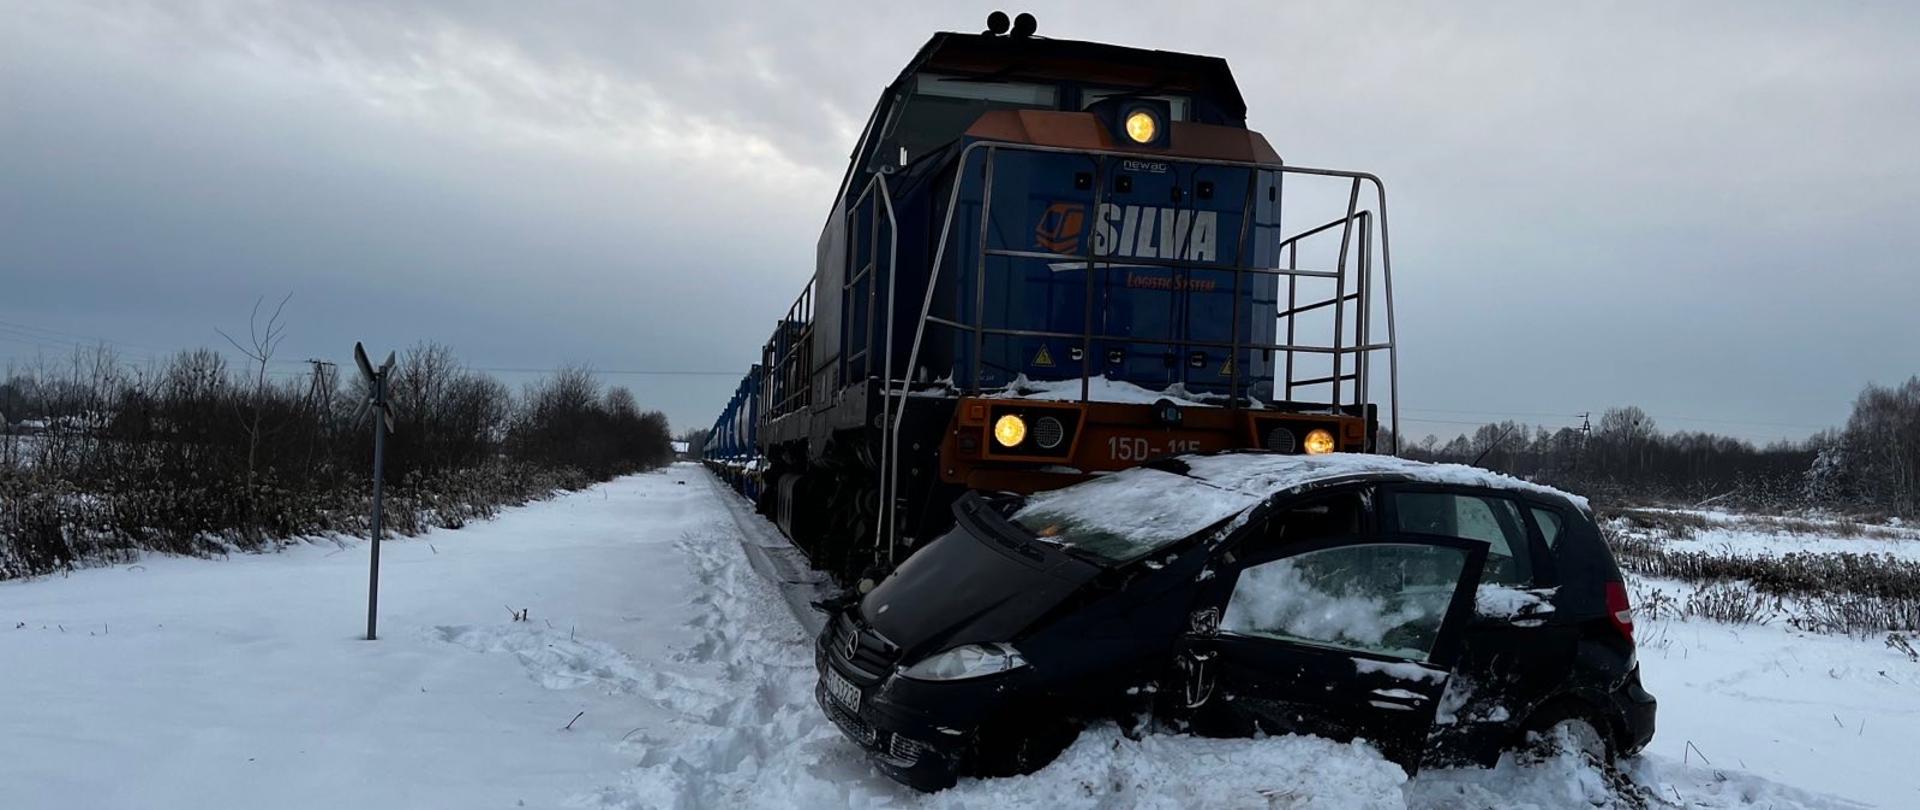 W warunkach zimowych, na torowisku widoczny samochód osobowy, który zderzył się z lokomotywą. Lokomotywa przylega bezpośrednio do pojazdu. 